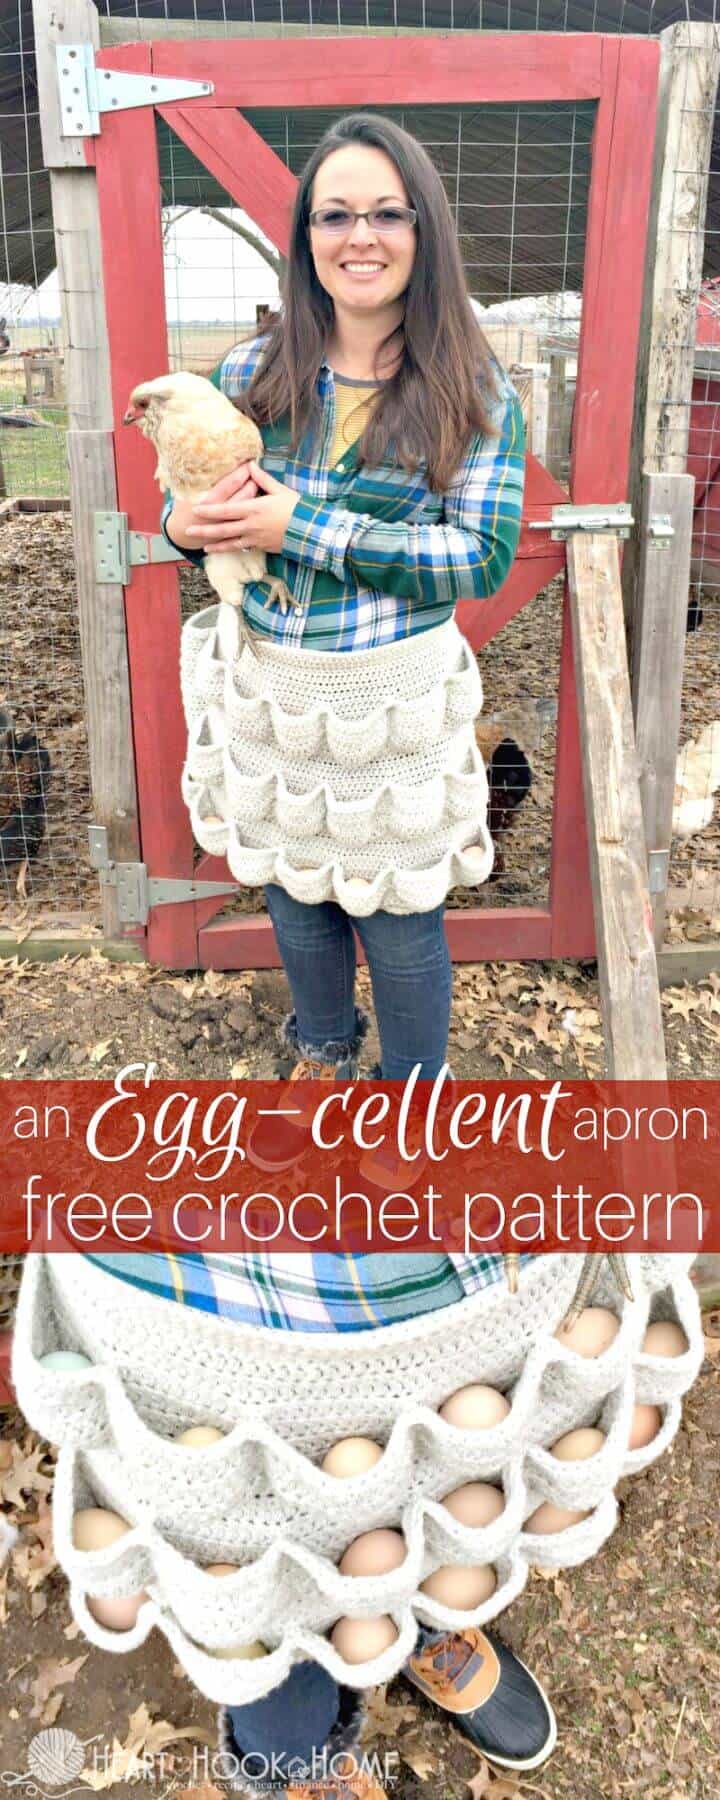 Crochet gratis un patrón de delantal de huevo-Cellent